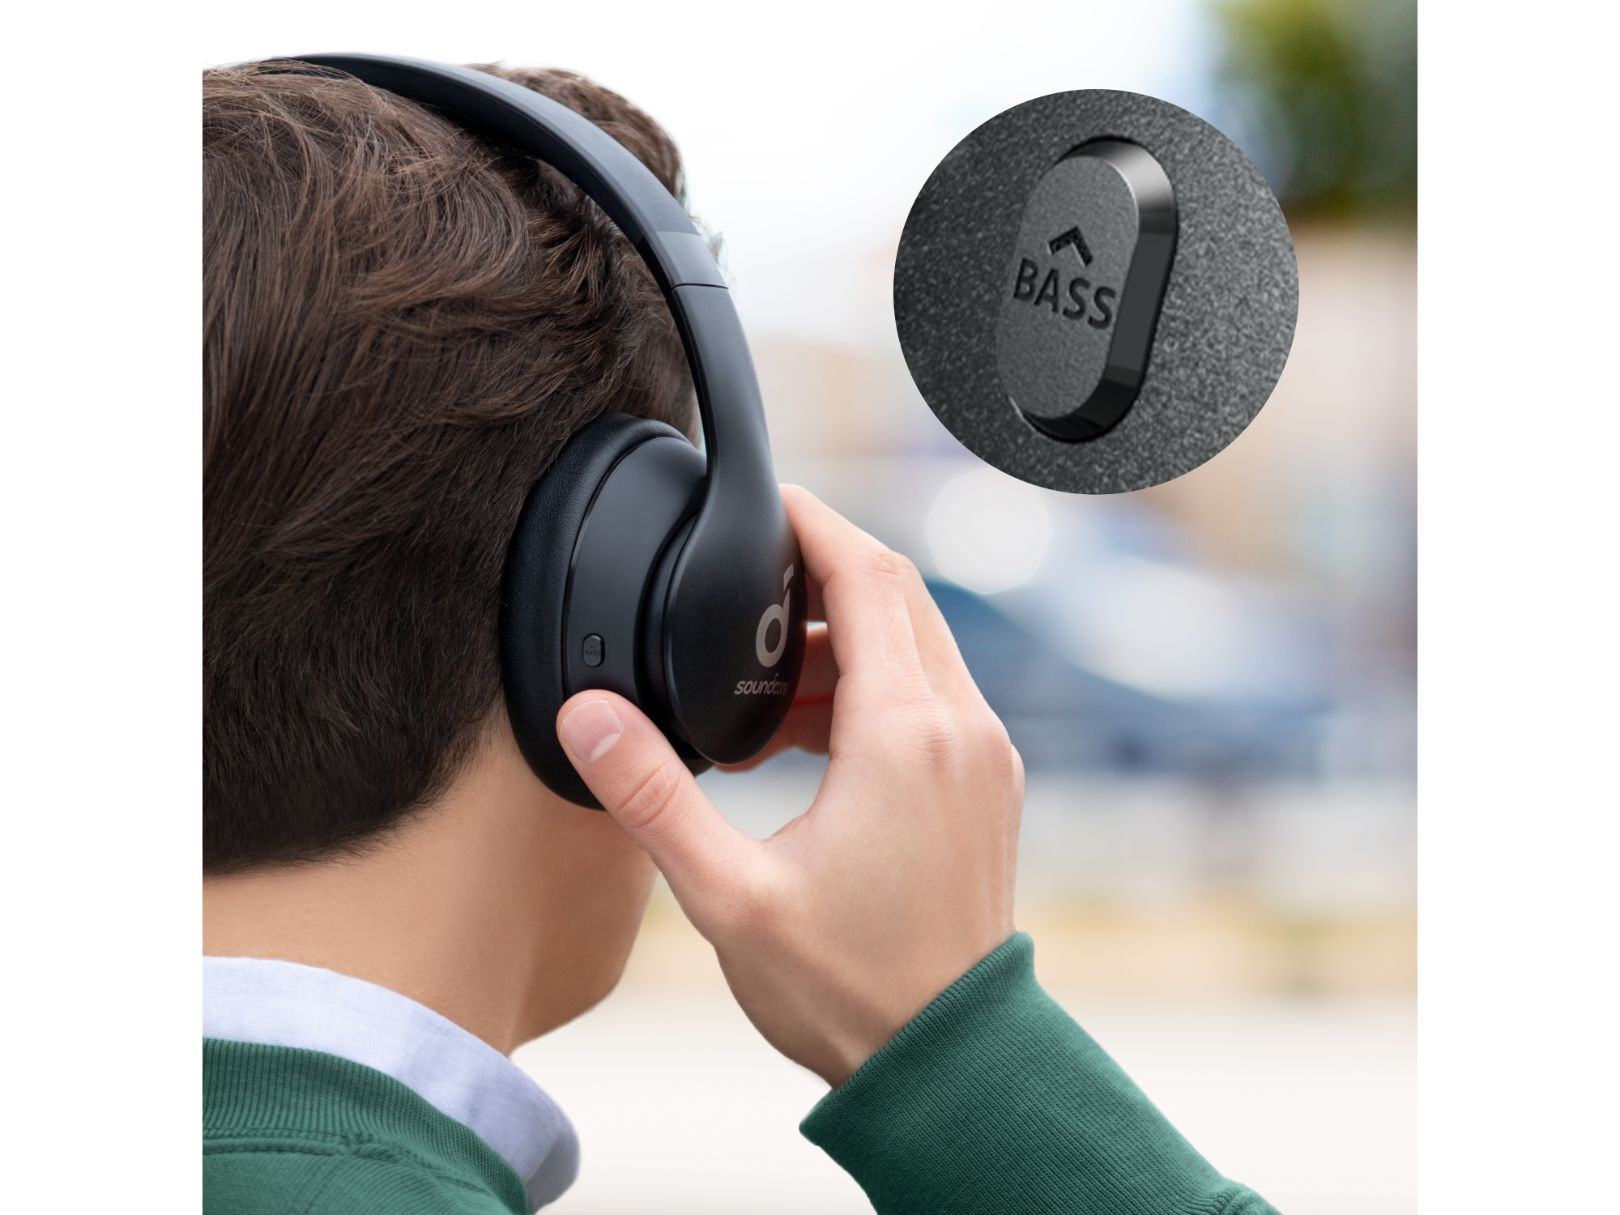 Audifonos Bluetooth Soundcore Life 2 Neo Hi Res 60 Horas